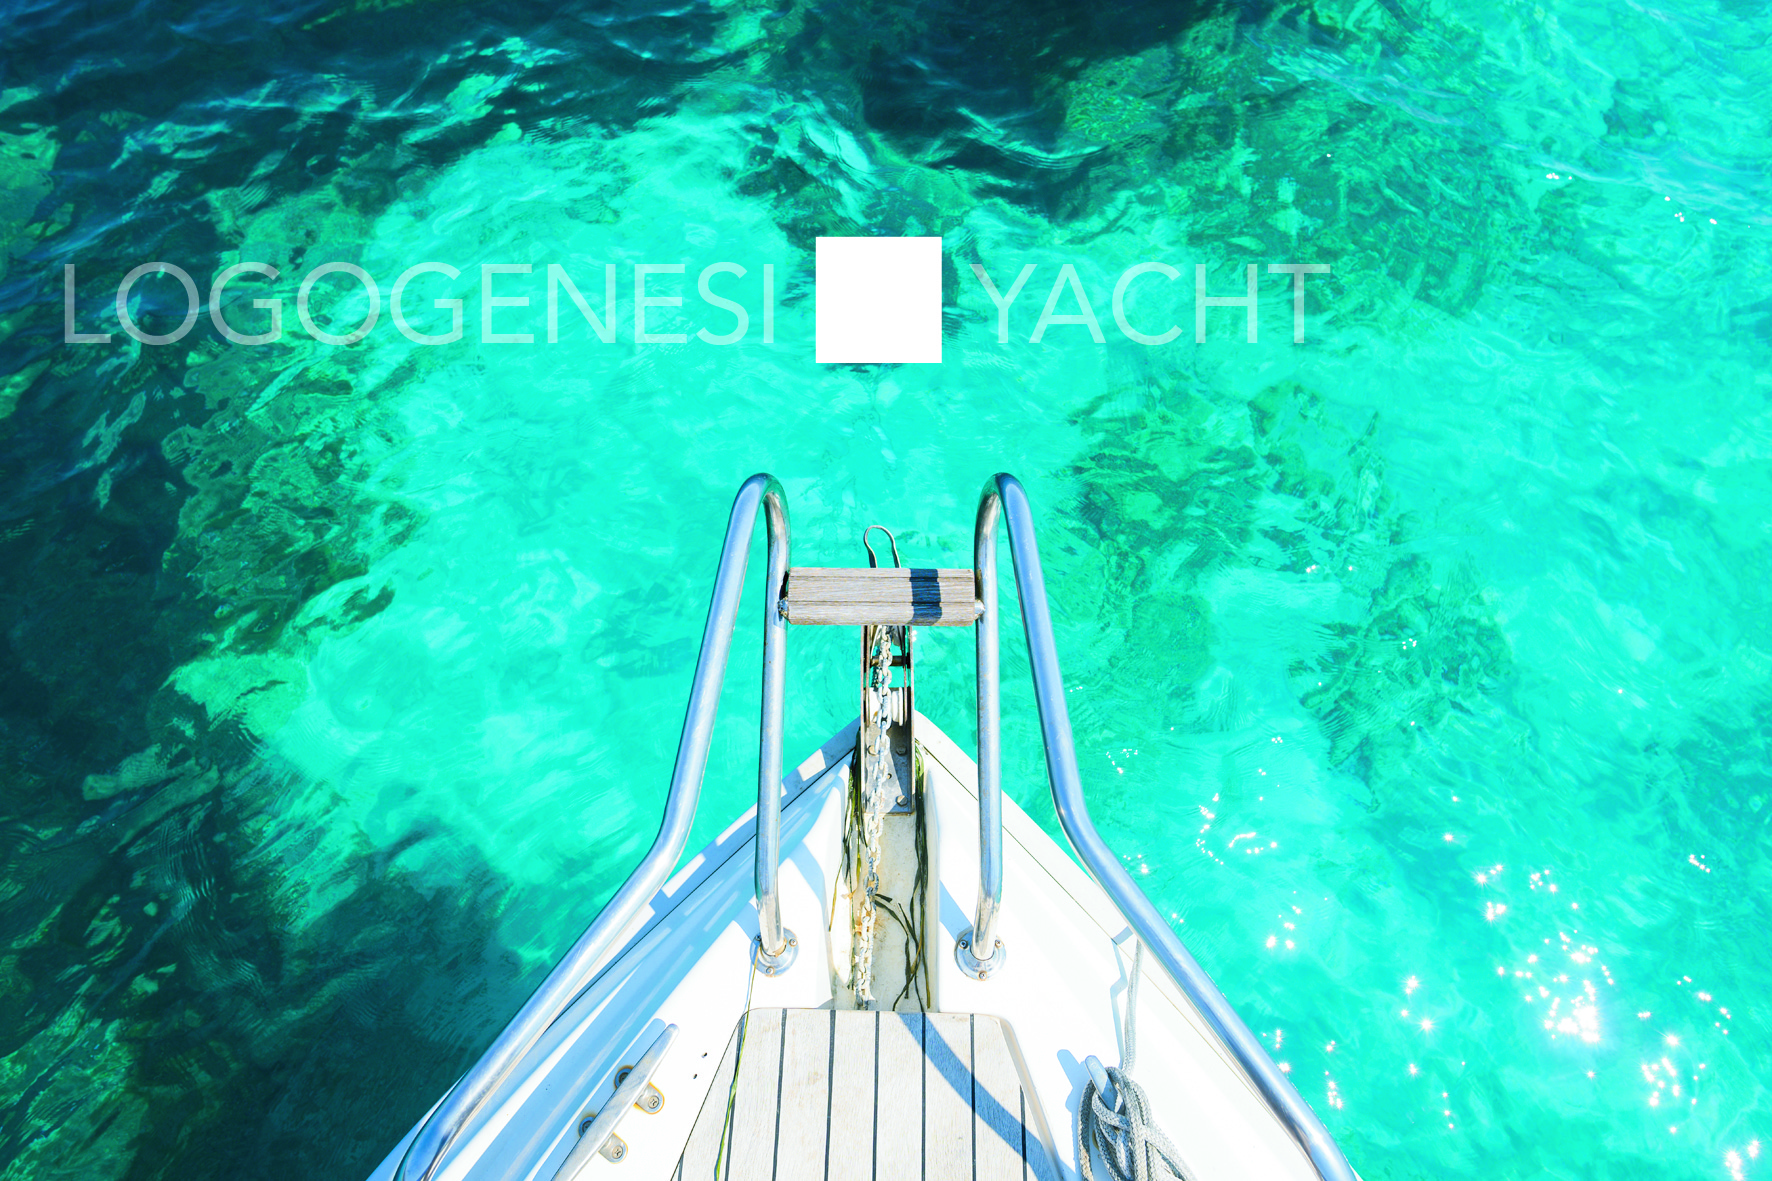 LogogenesiLogogenesi-yacht-naming